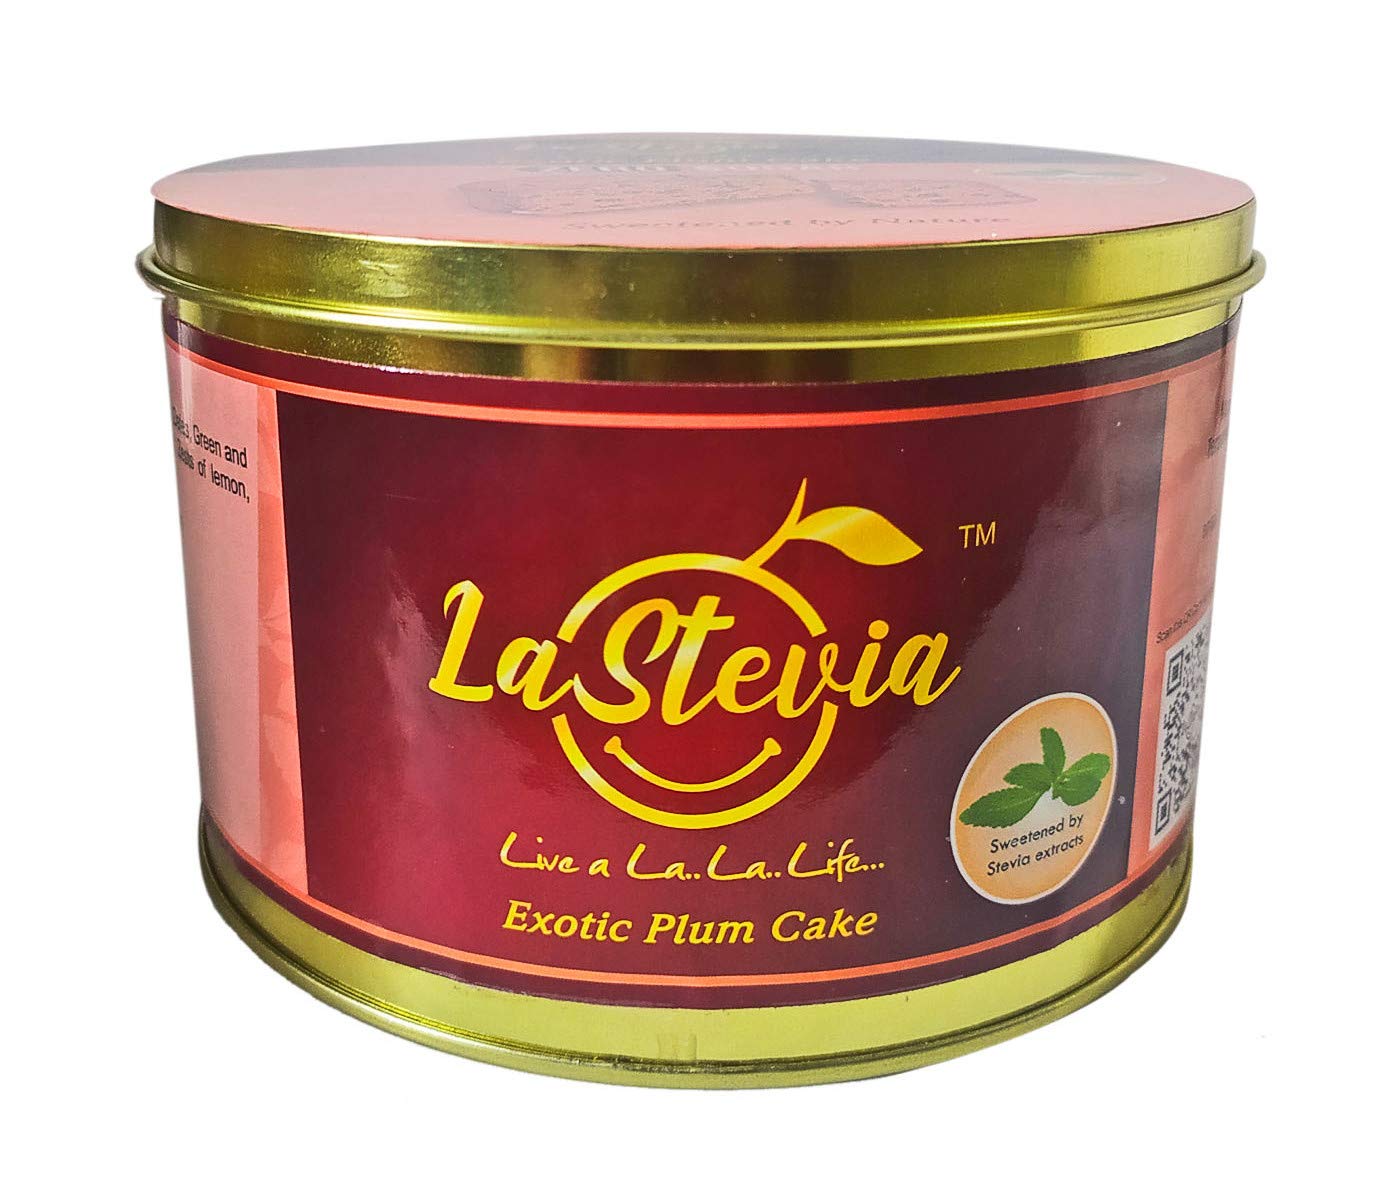 LaStevia Fresh Exotic Plum Cake Image